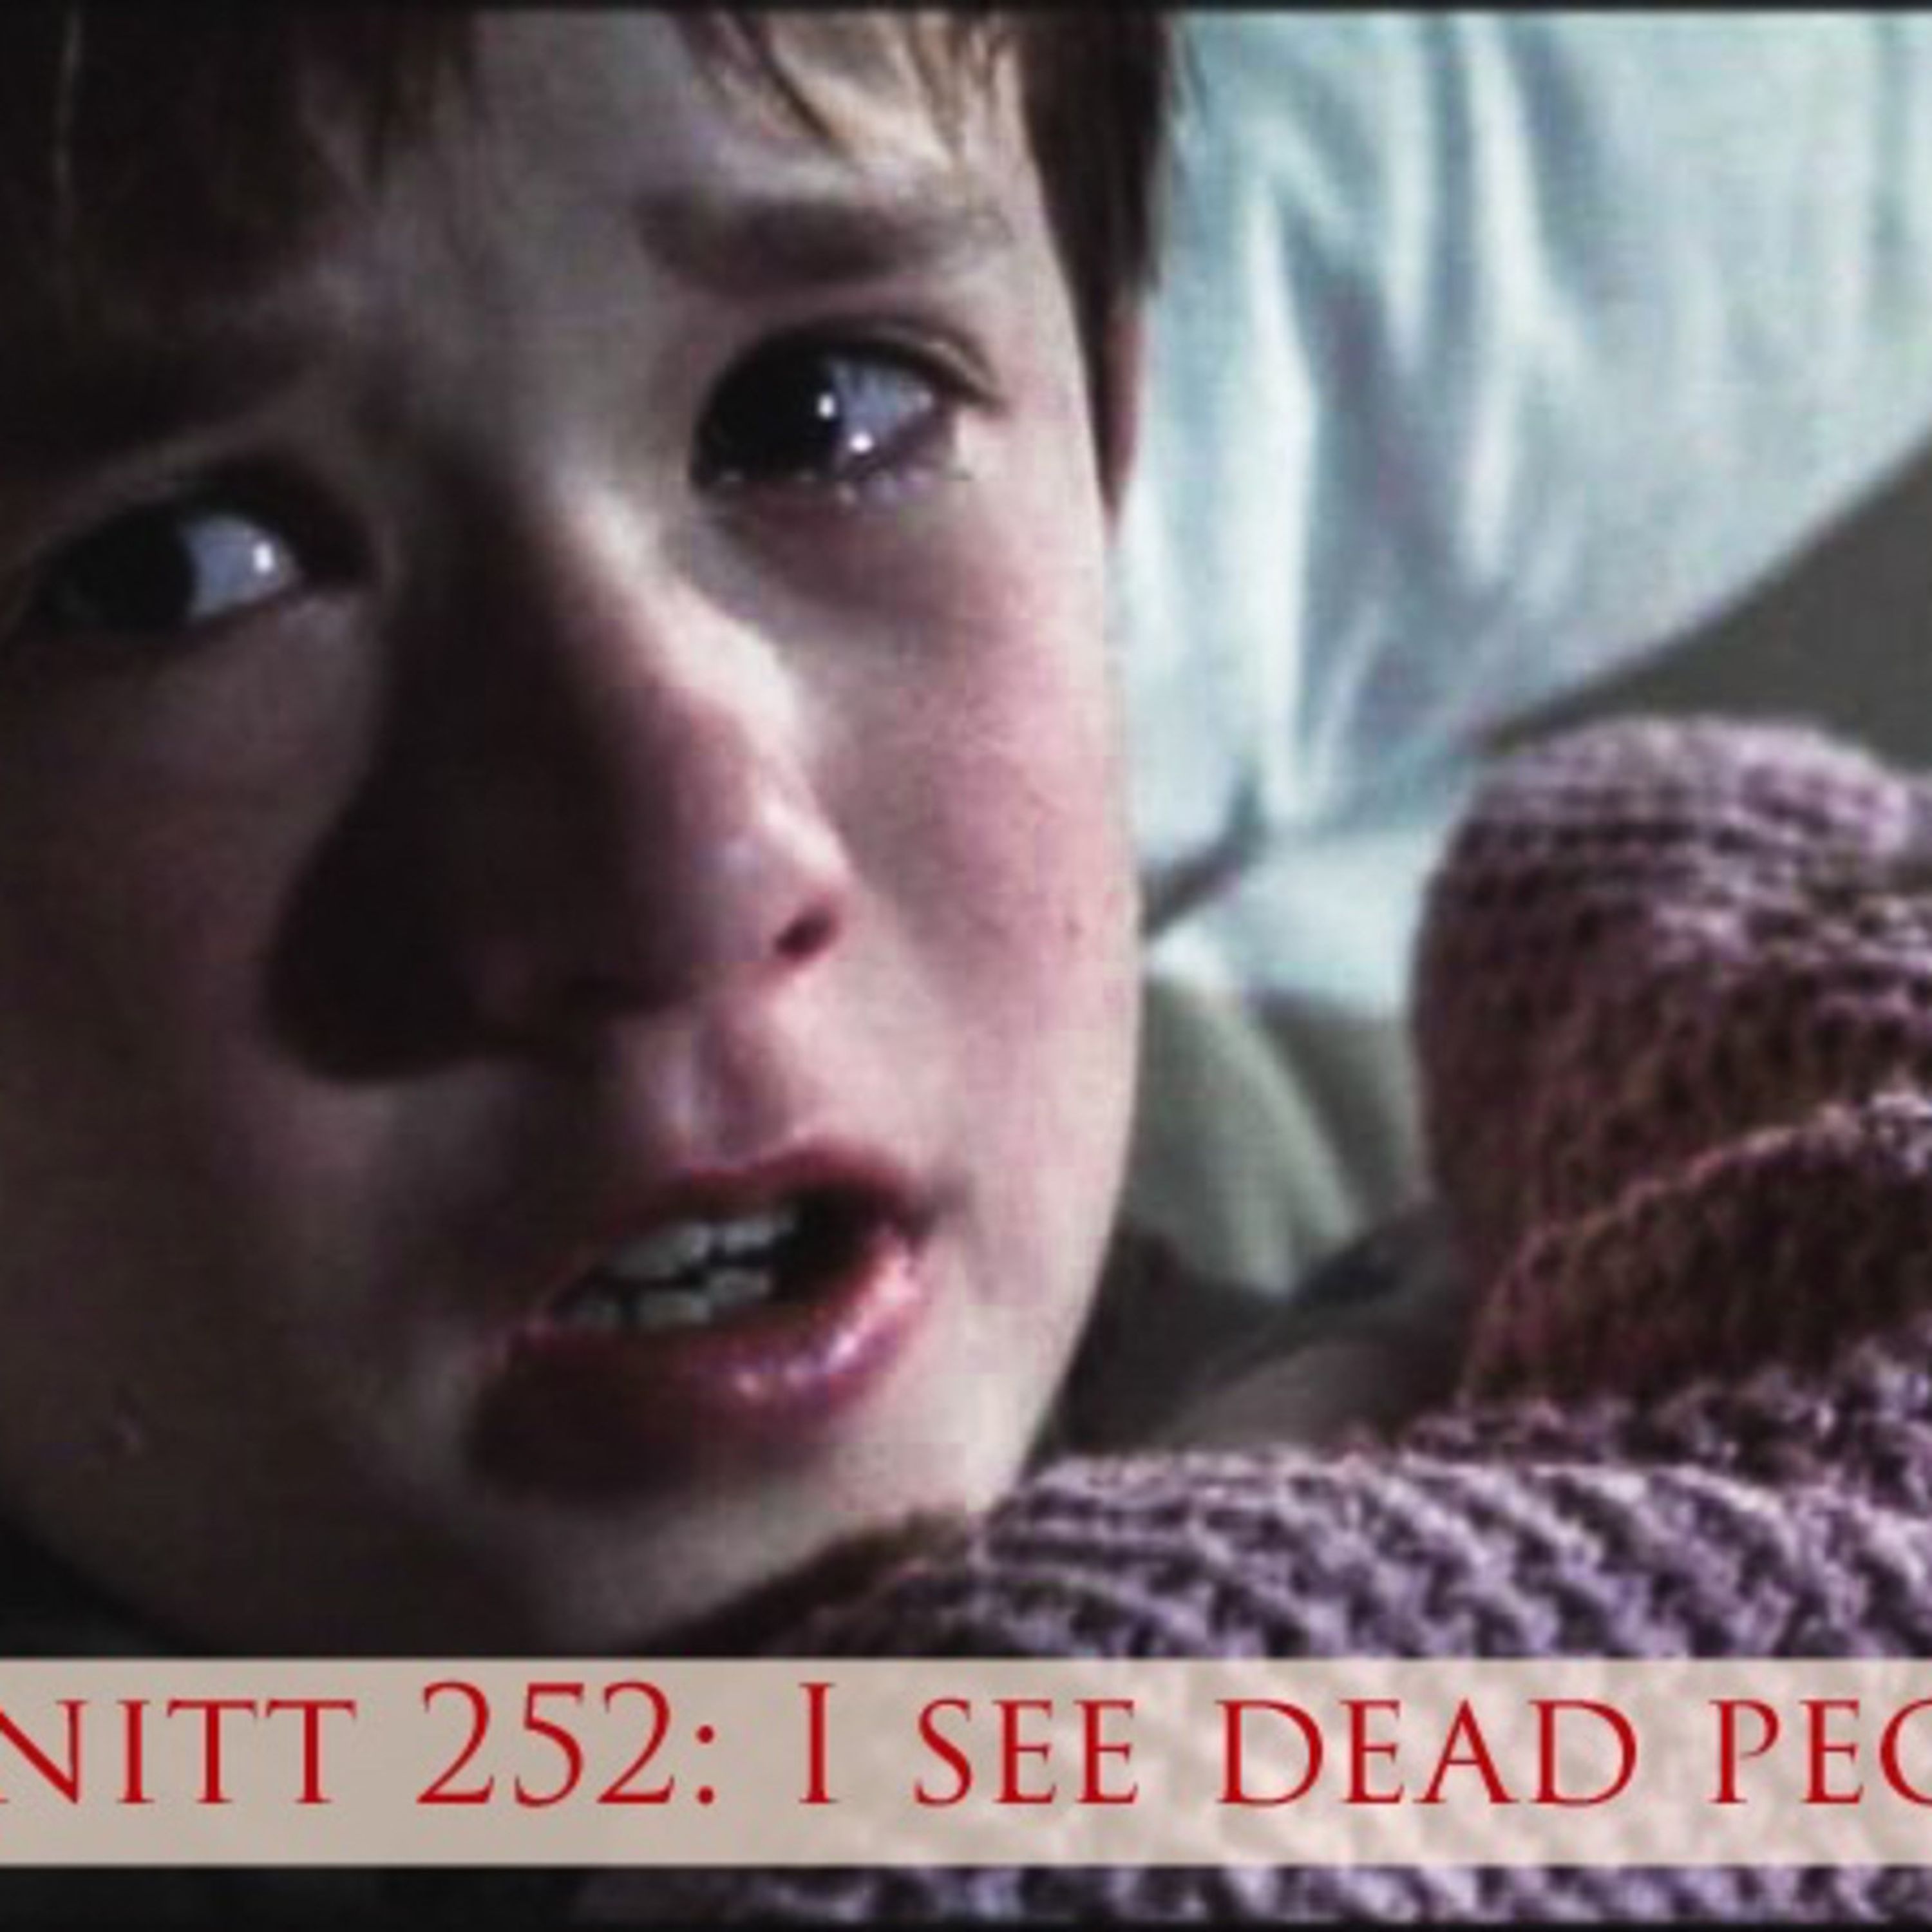 Avsnitt 252: I see dead people